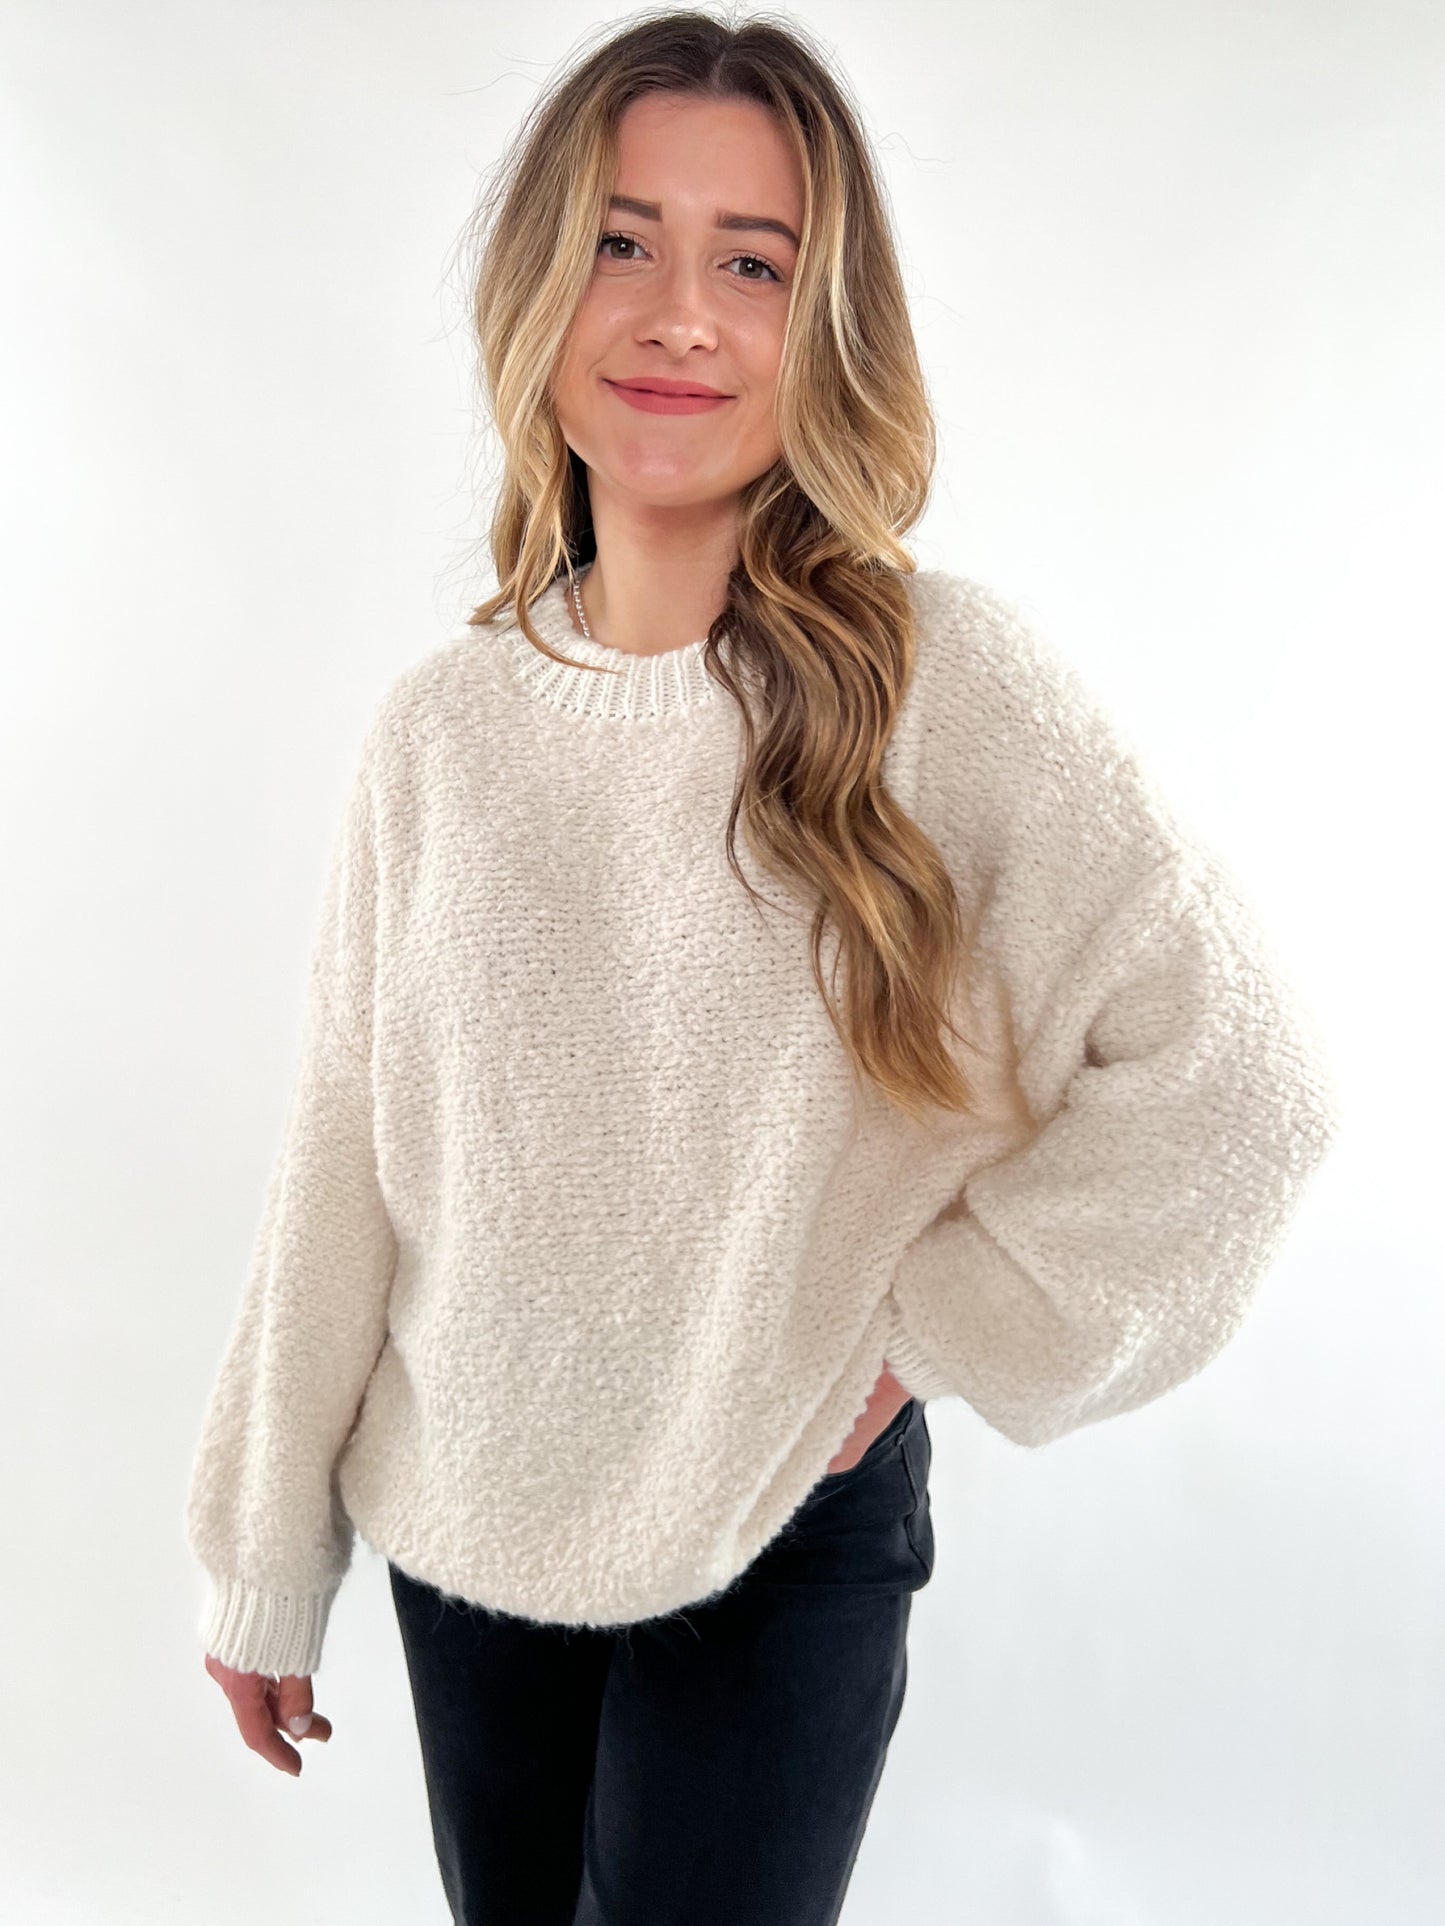 Bouclé Sweater Contrast - creme weiß